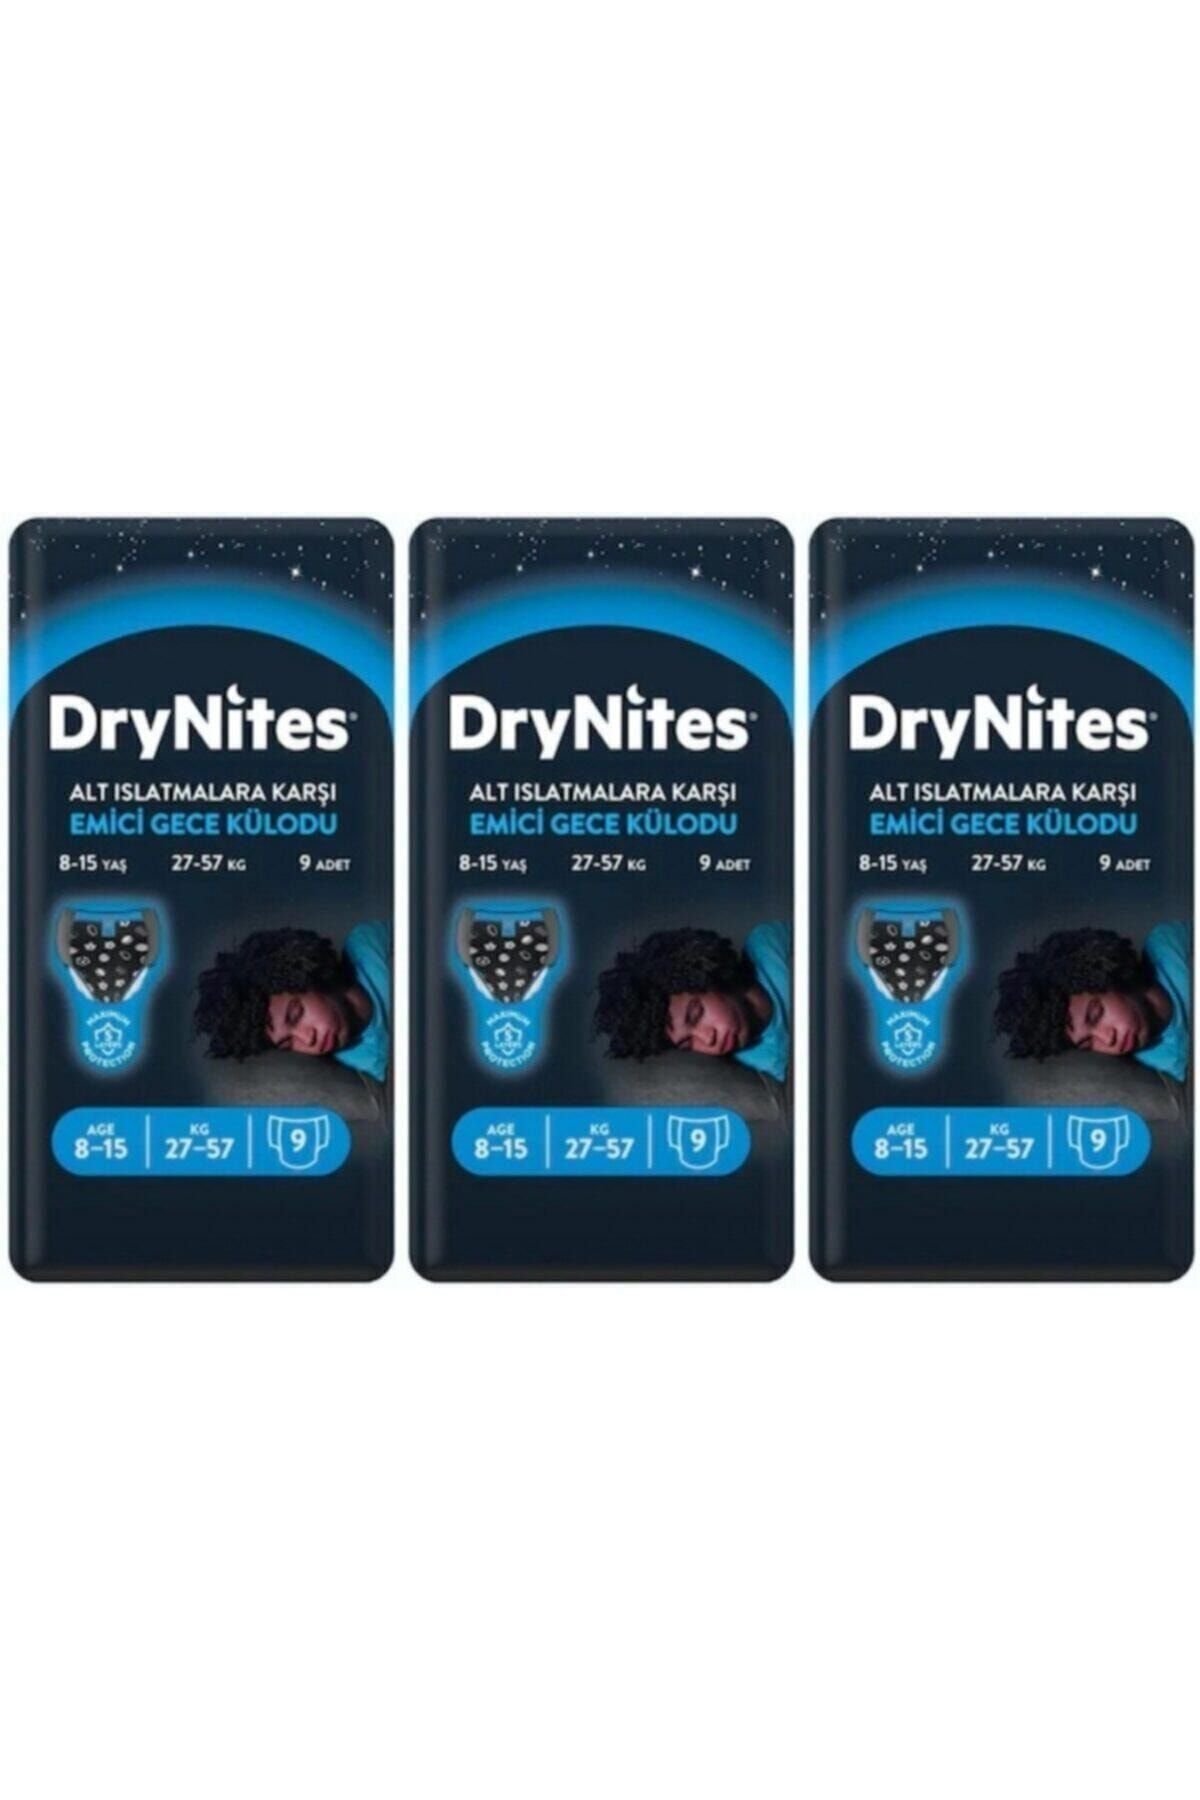 DryNites Erkek Emici Gece Külodu 8-15 Yaş 27 Adet